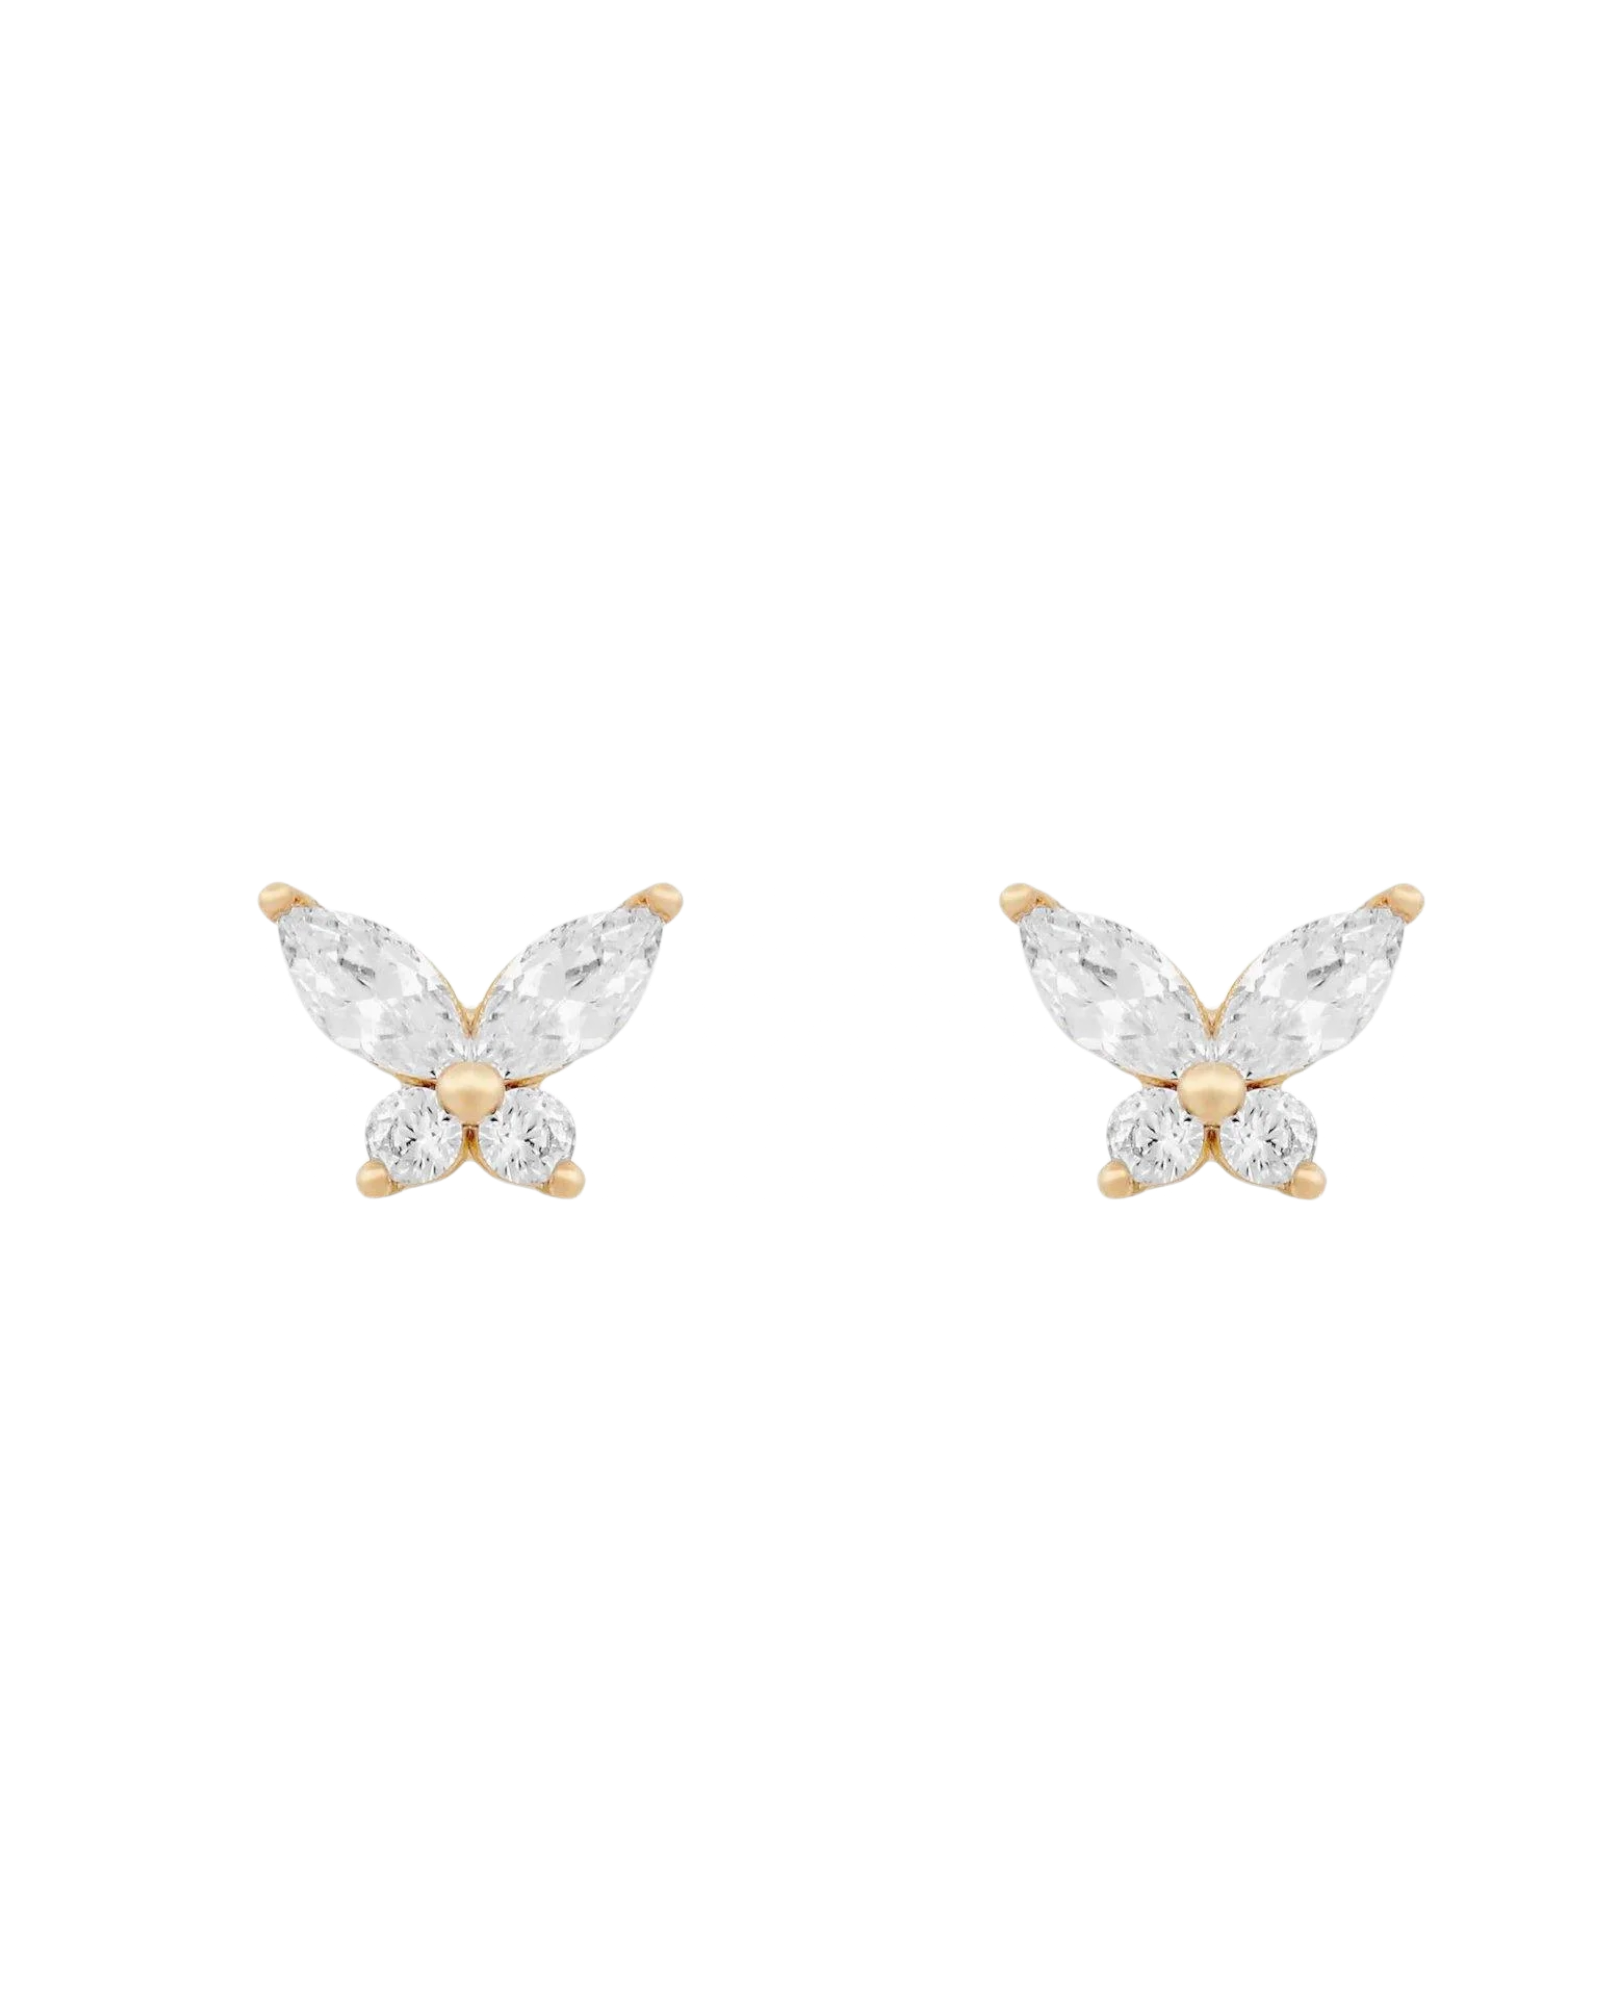 Fly High Butterfly Stud Earrings SHE0572